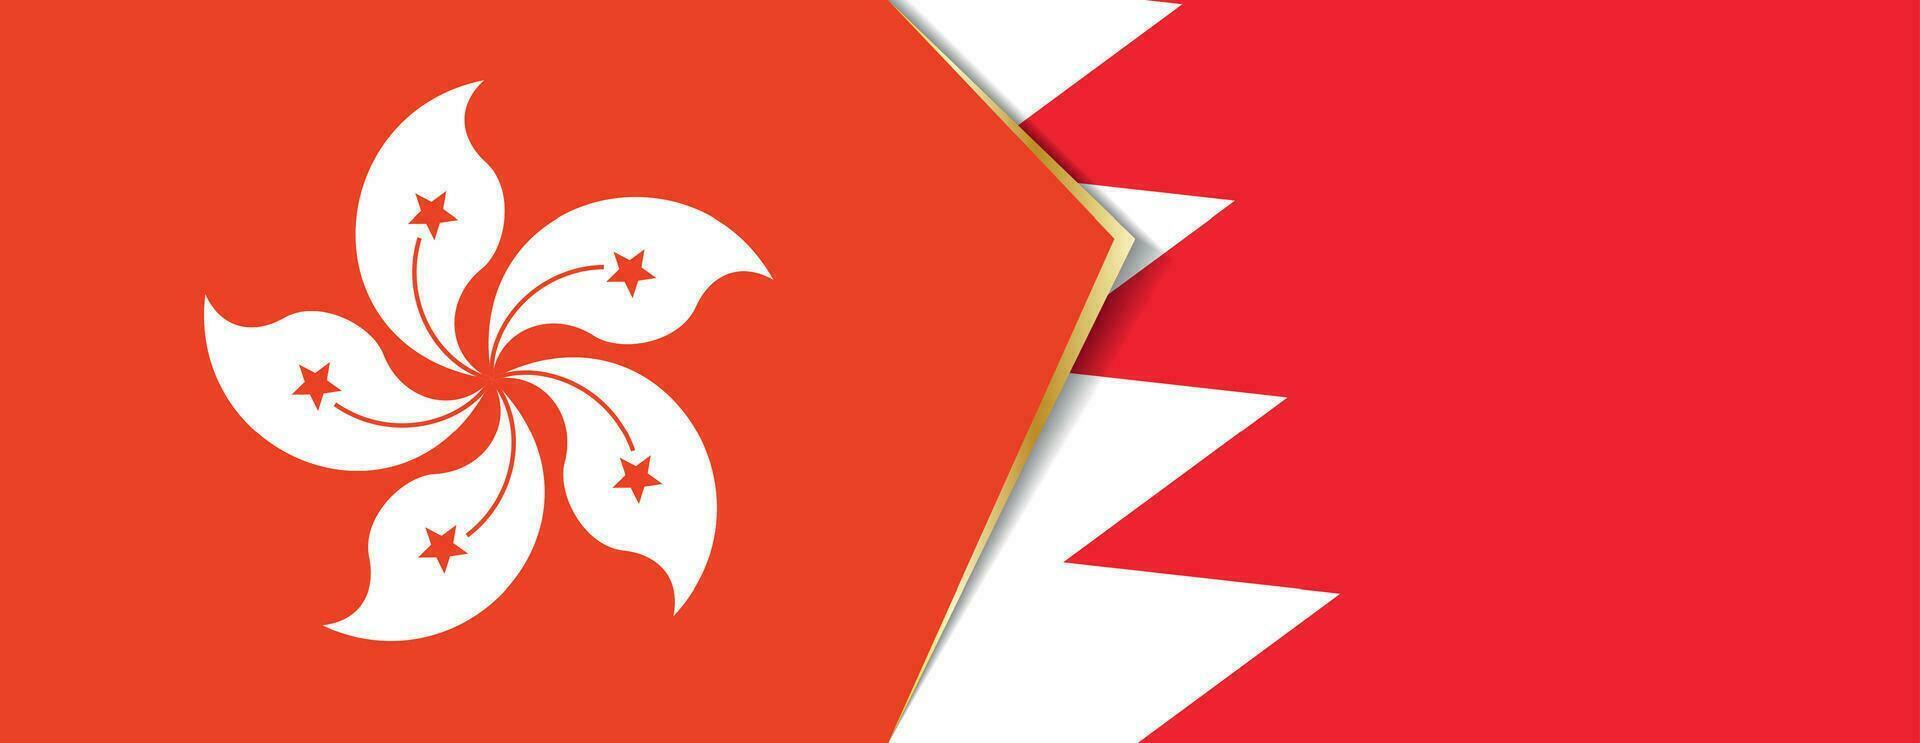 hong kong e bahrain bandeiras, dois vetor bandeiras.